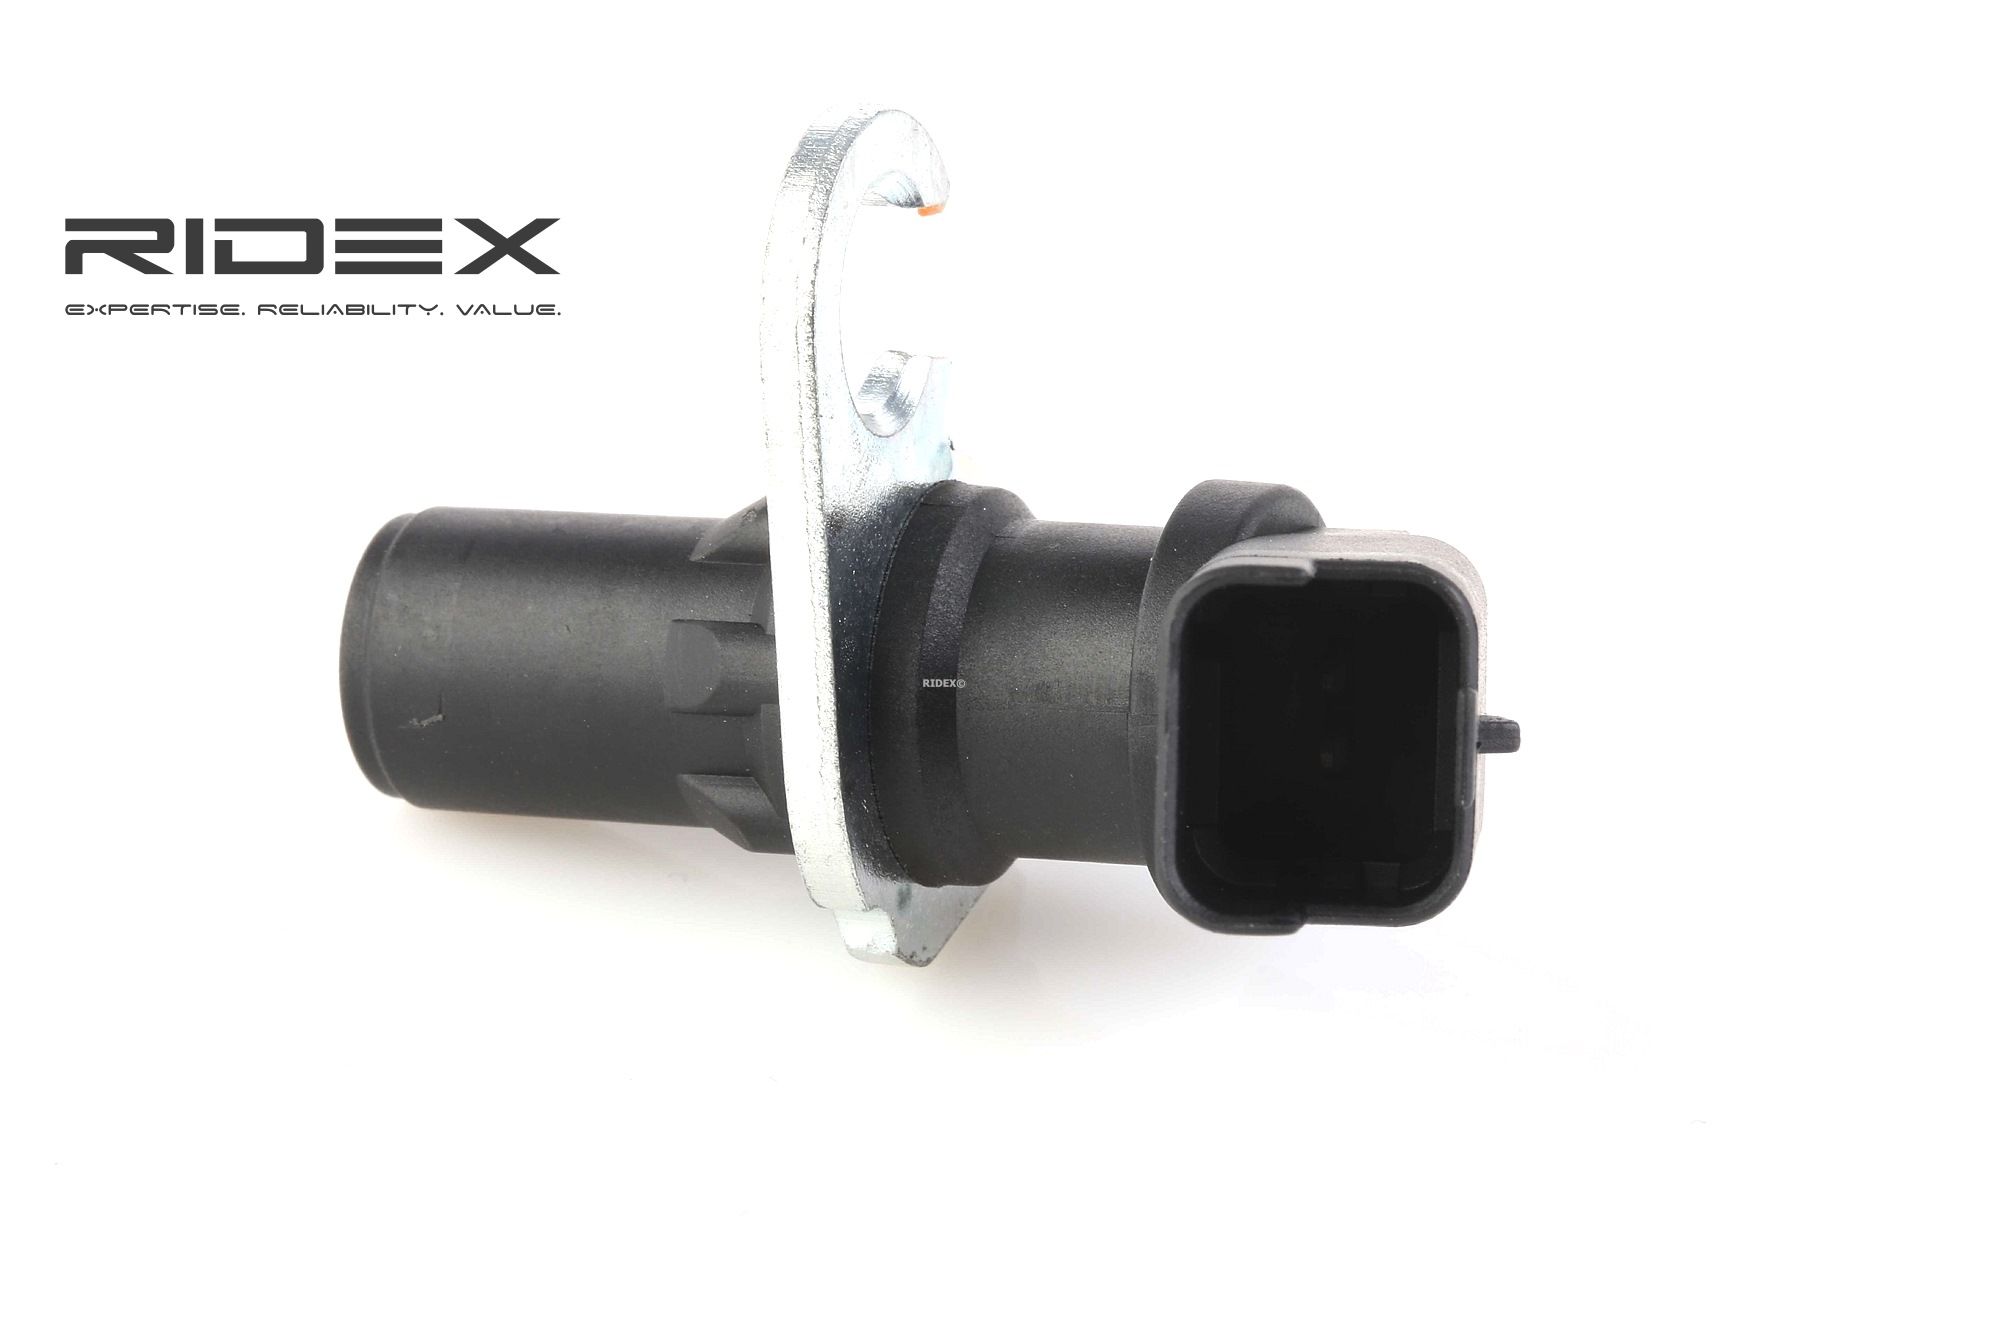 RIDEX 833C0074 Crankshaft sensor 2-pin connector, Inductive Sensor, without cable